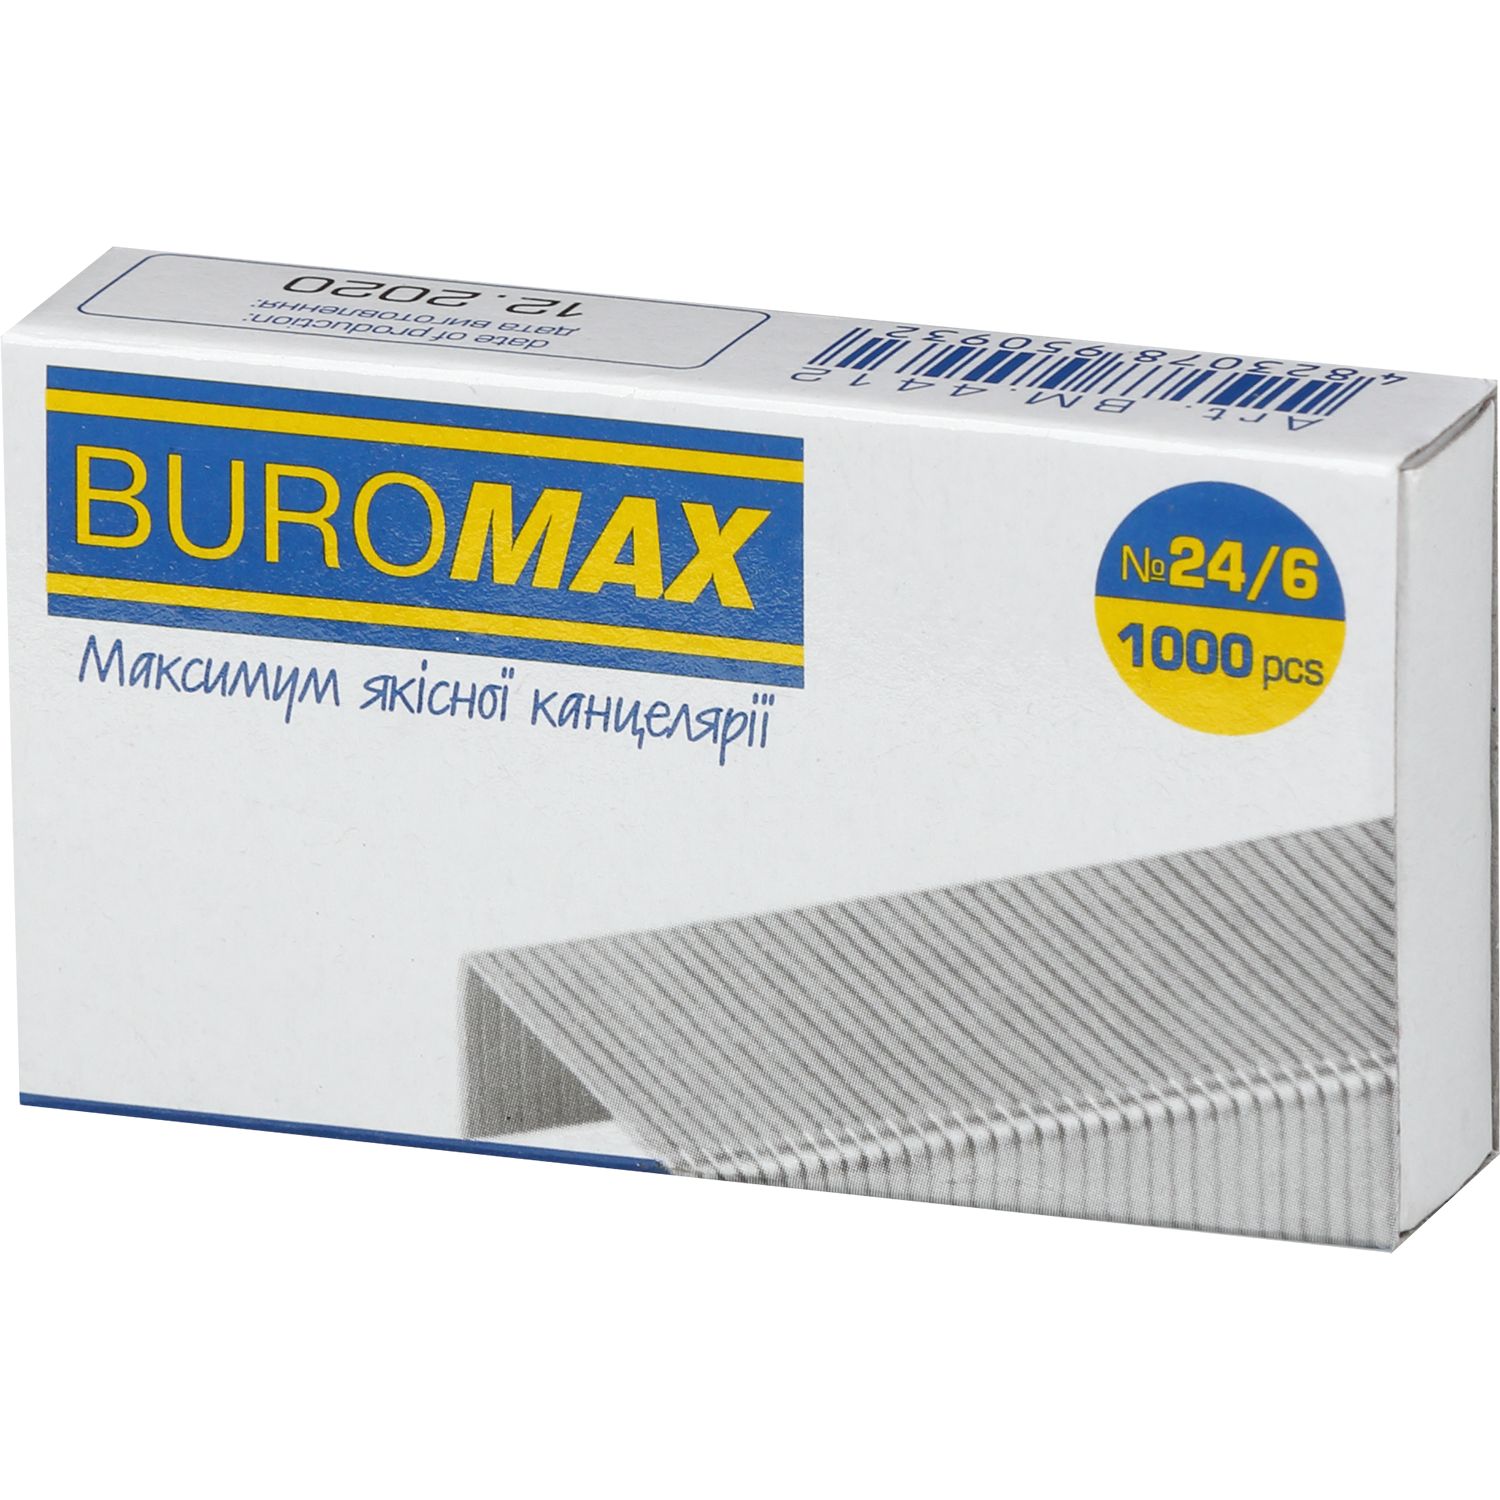 Скоби для степлерів Buromax Люкс №24/6 1000 шт. (BM.4412) - фото 1